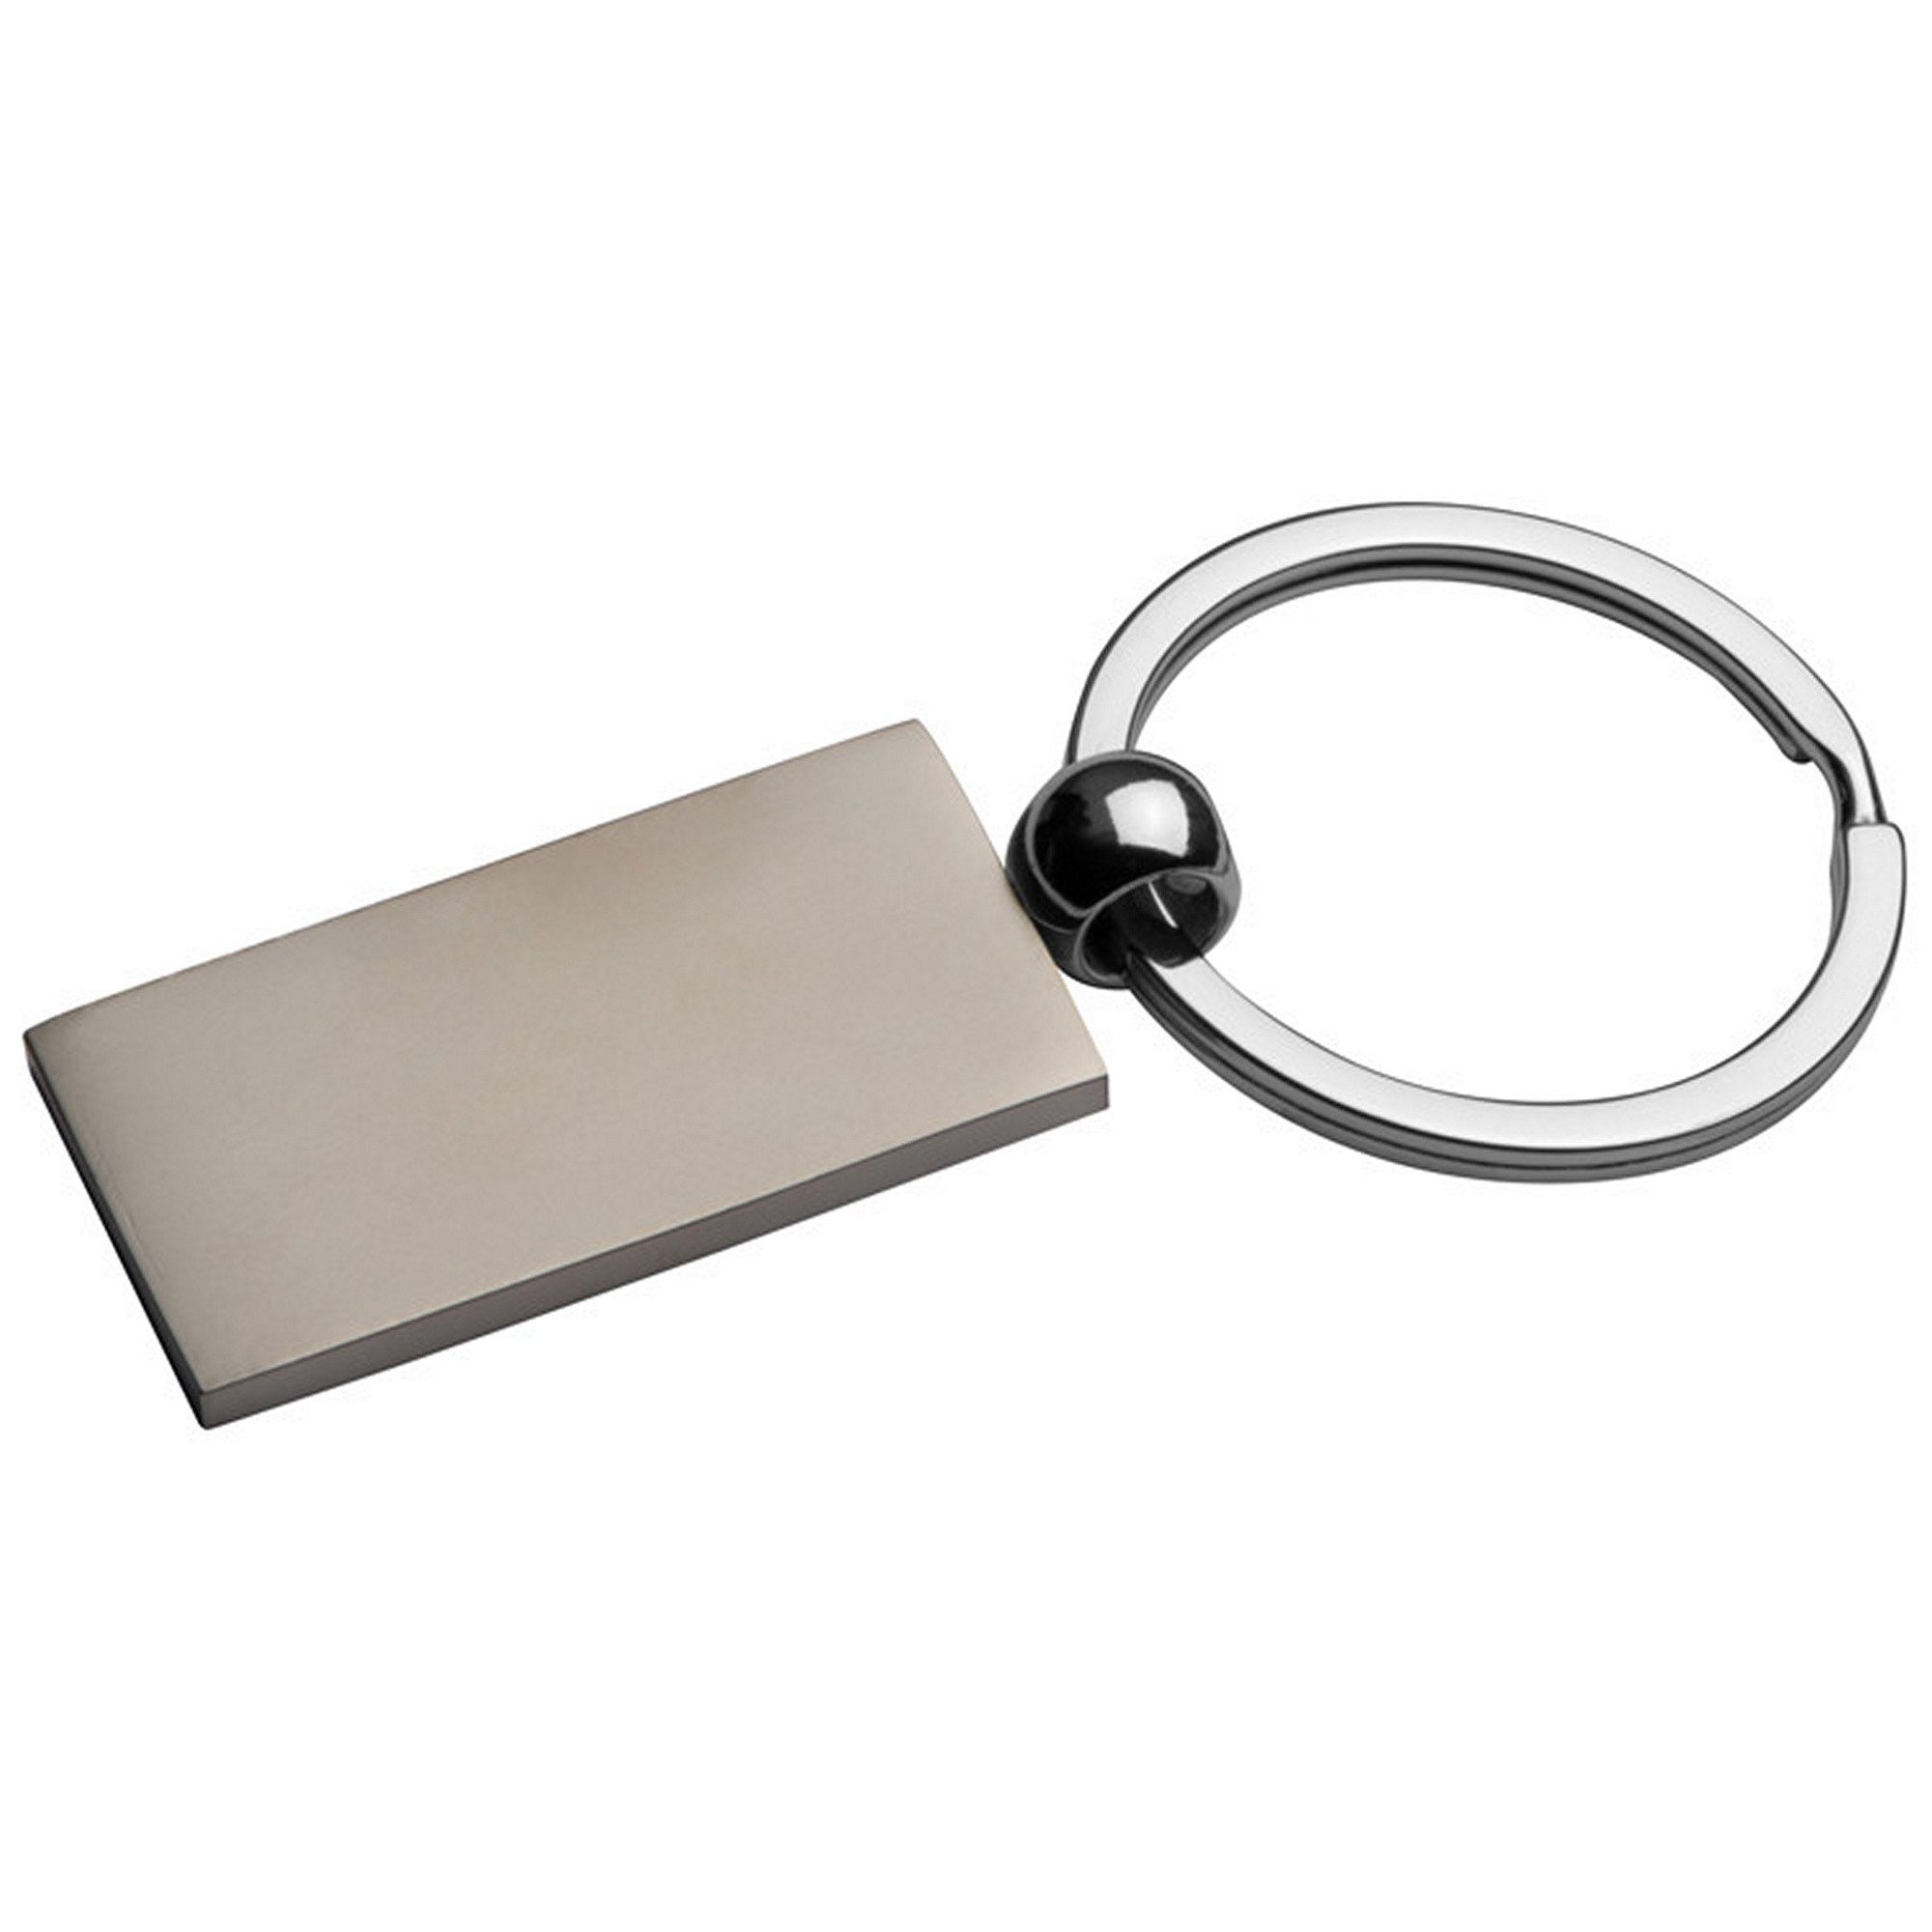 Livepac Office Schlüsselanhänger Metall-Schlüsselanhänger / rechteckig / verchromt / mit Schlüsselring